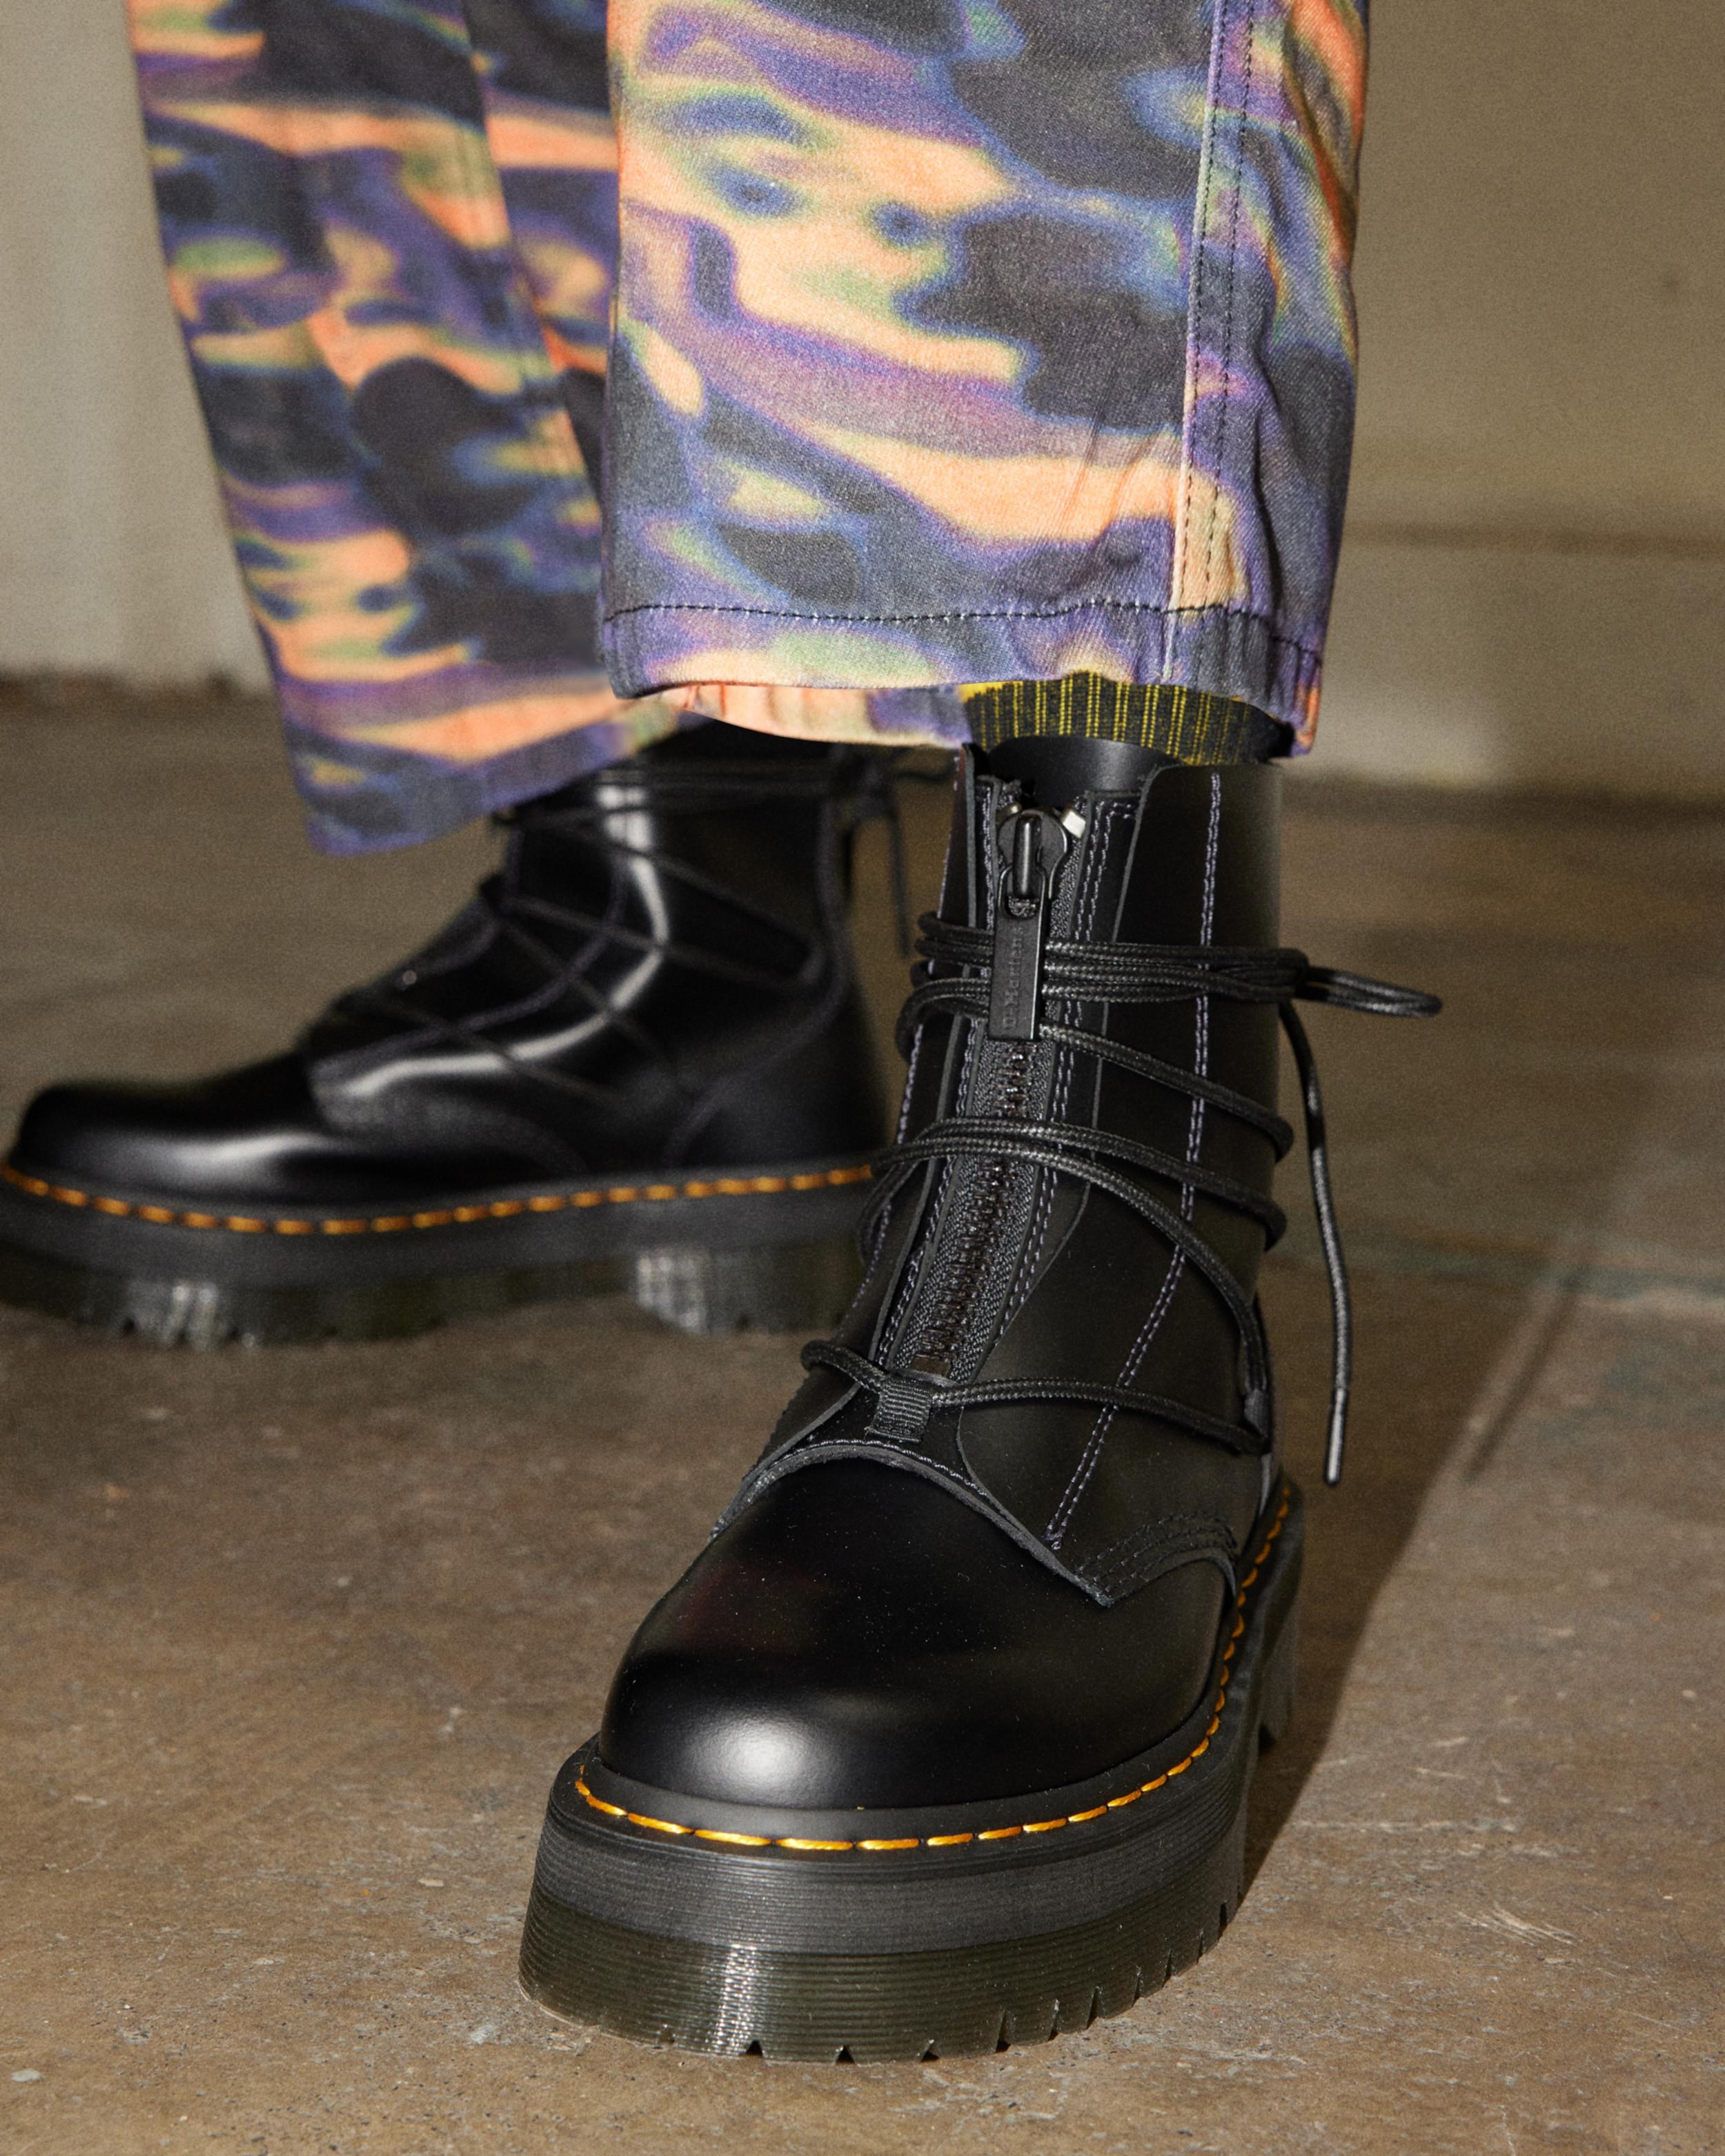 Jarrick II Laced Leather Platform Boots in Black | Dr. Martens